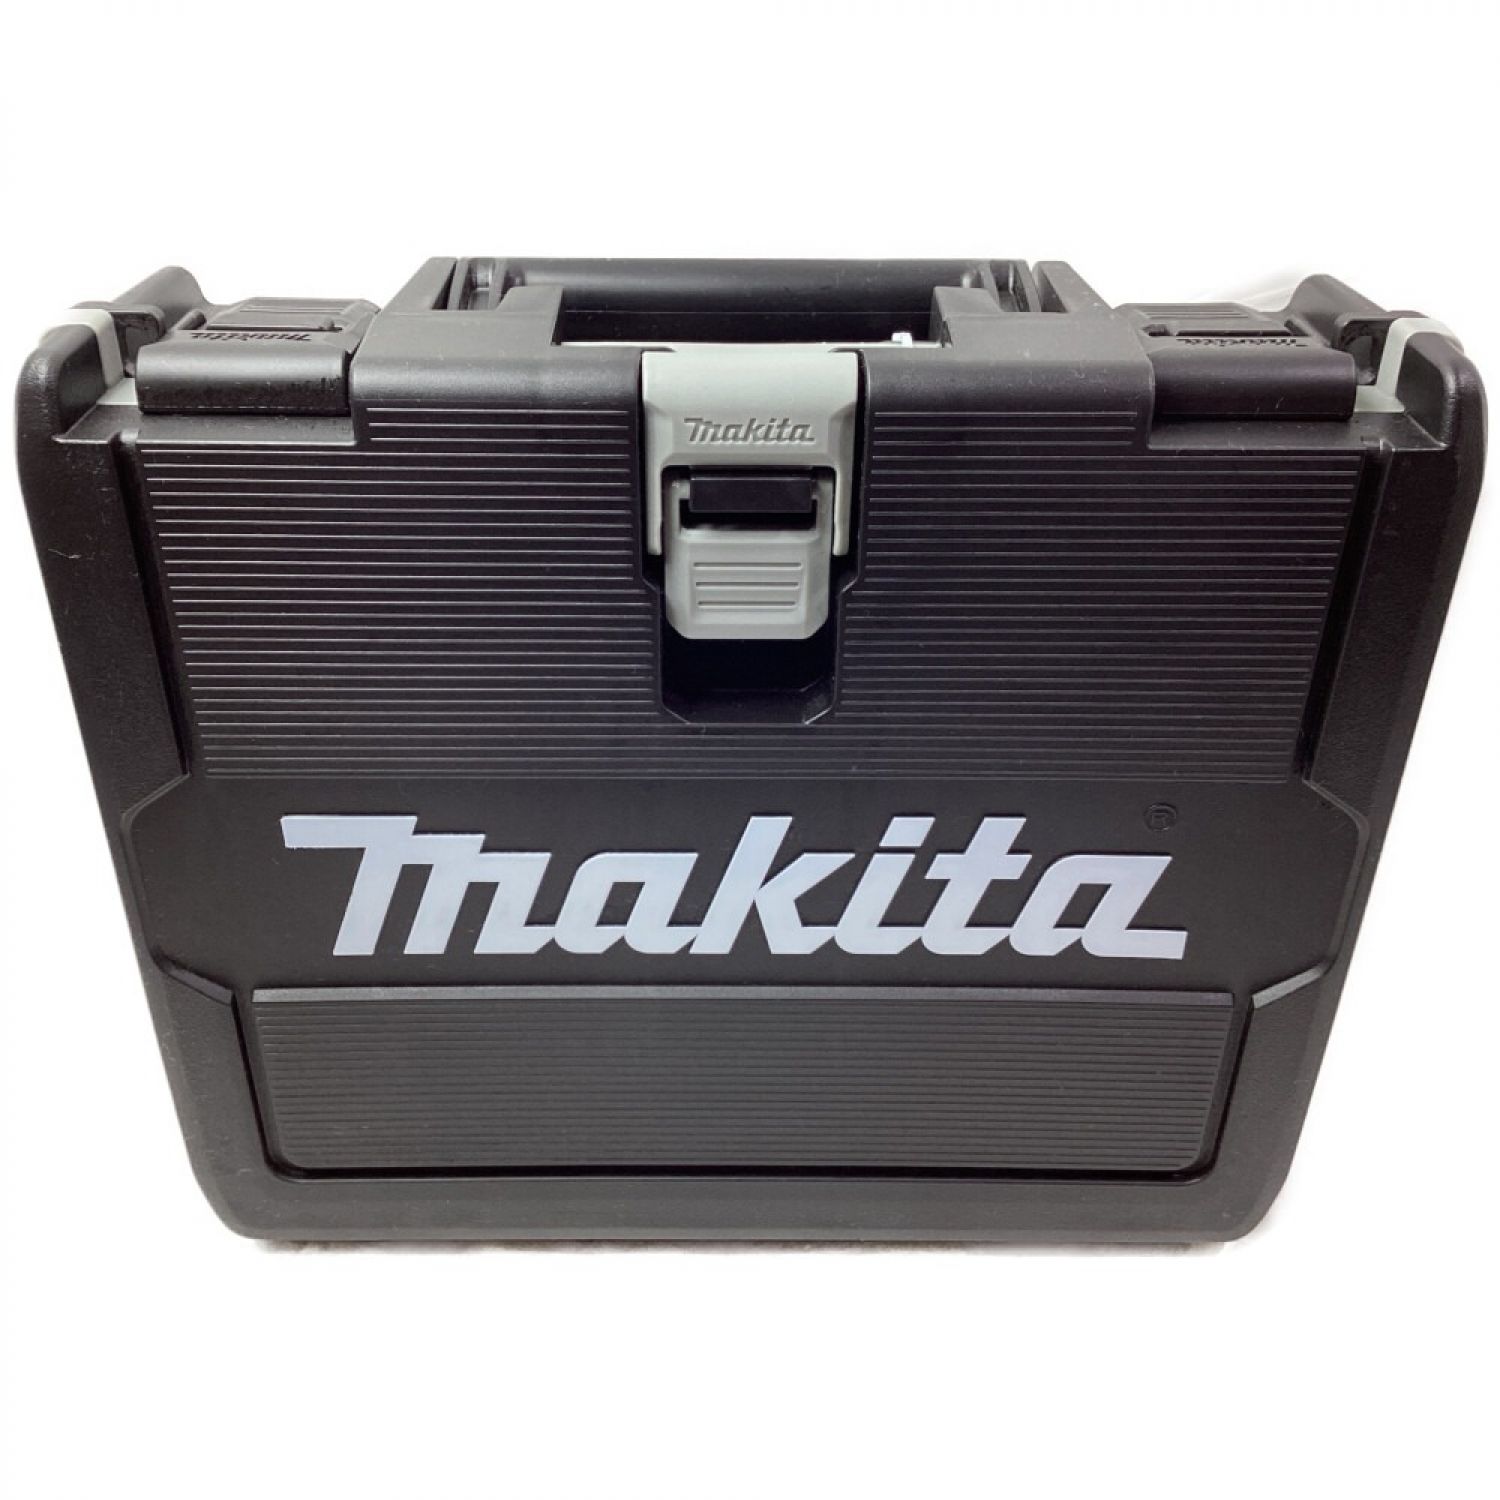 MAKITA マキタ 18V 充電式インパクトドライバ TD172DGXAR オーセンティックレッド 電池・充電器・ケース付 Sランク